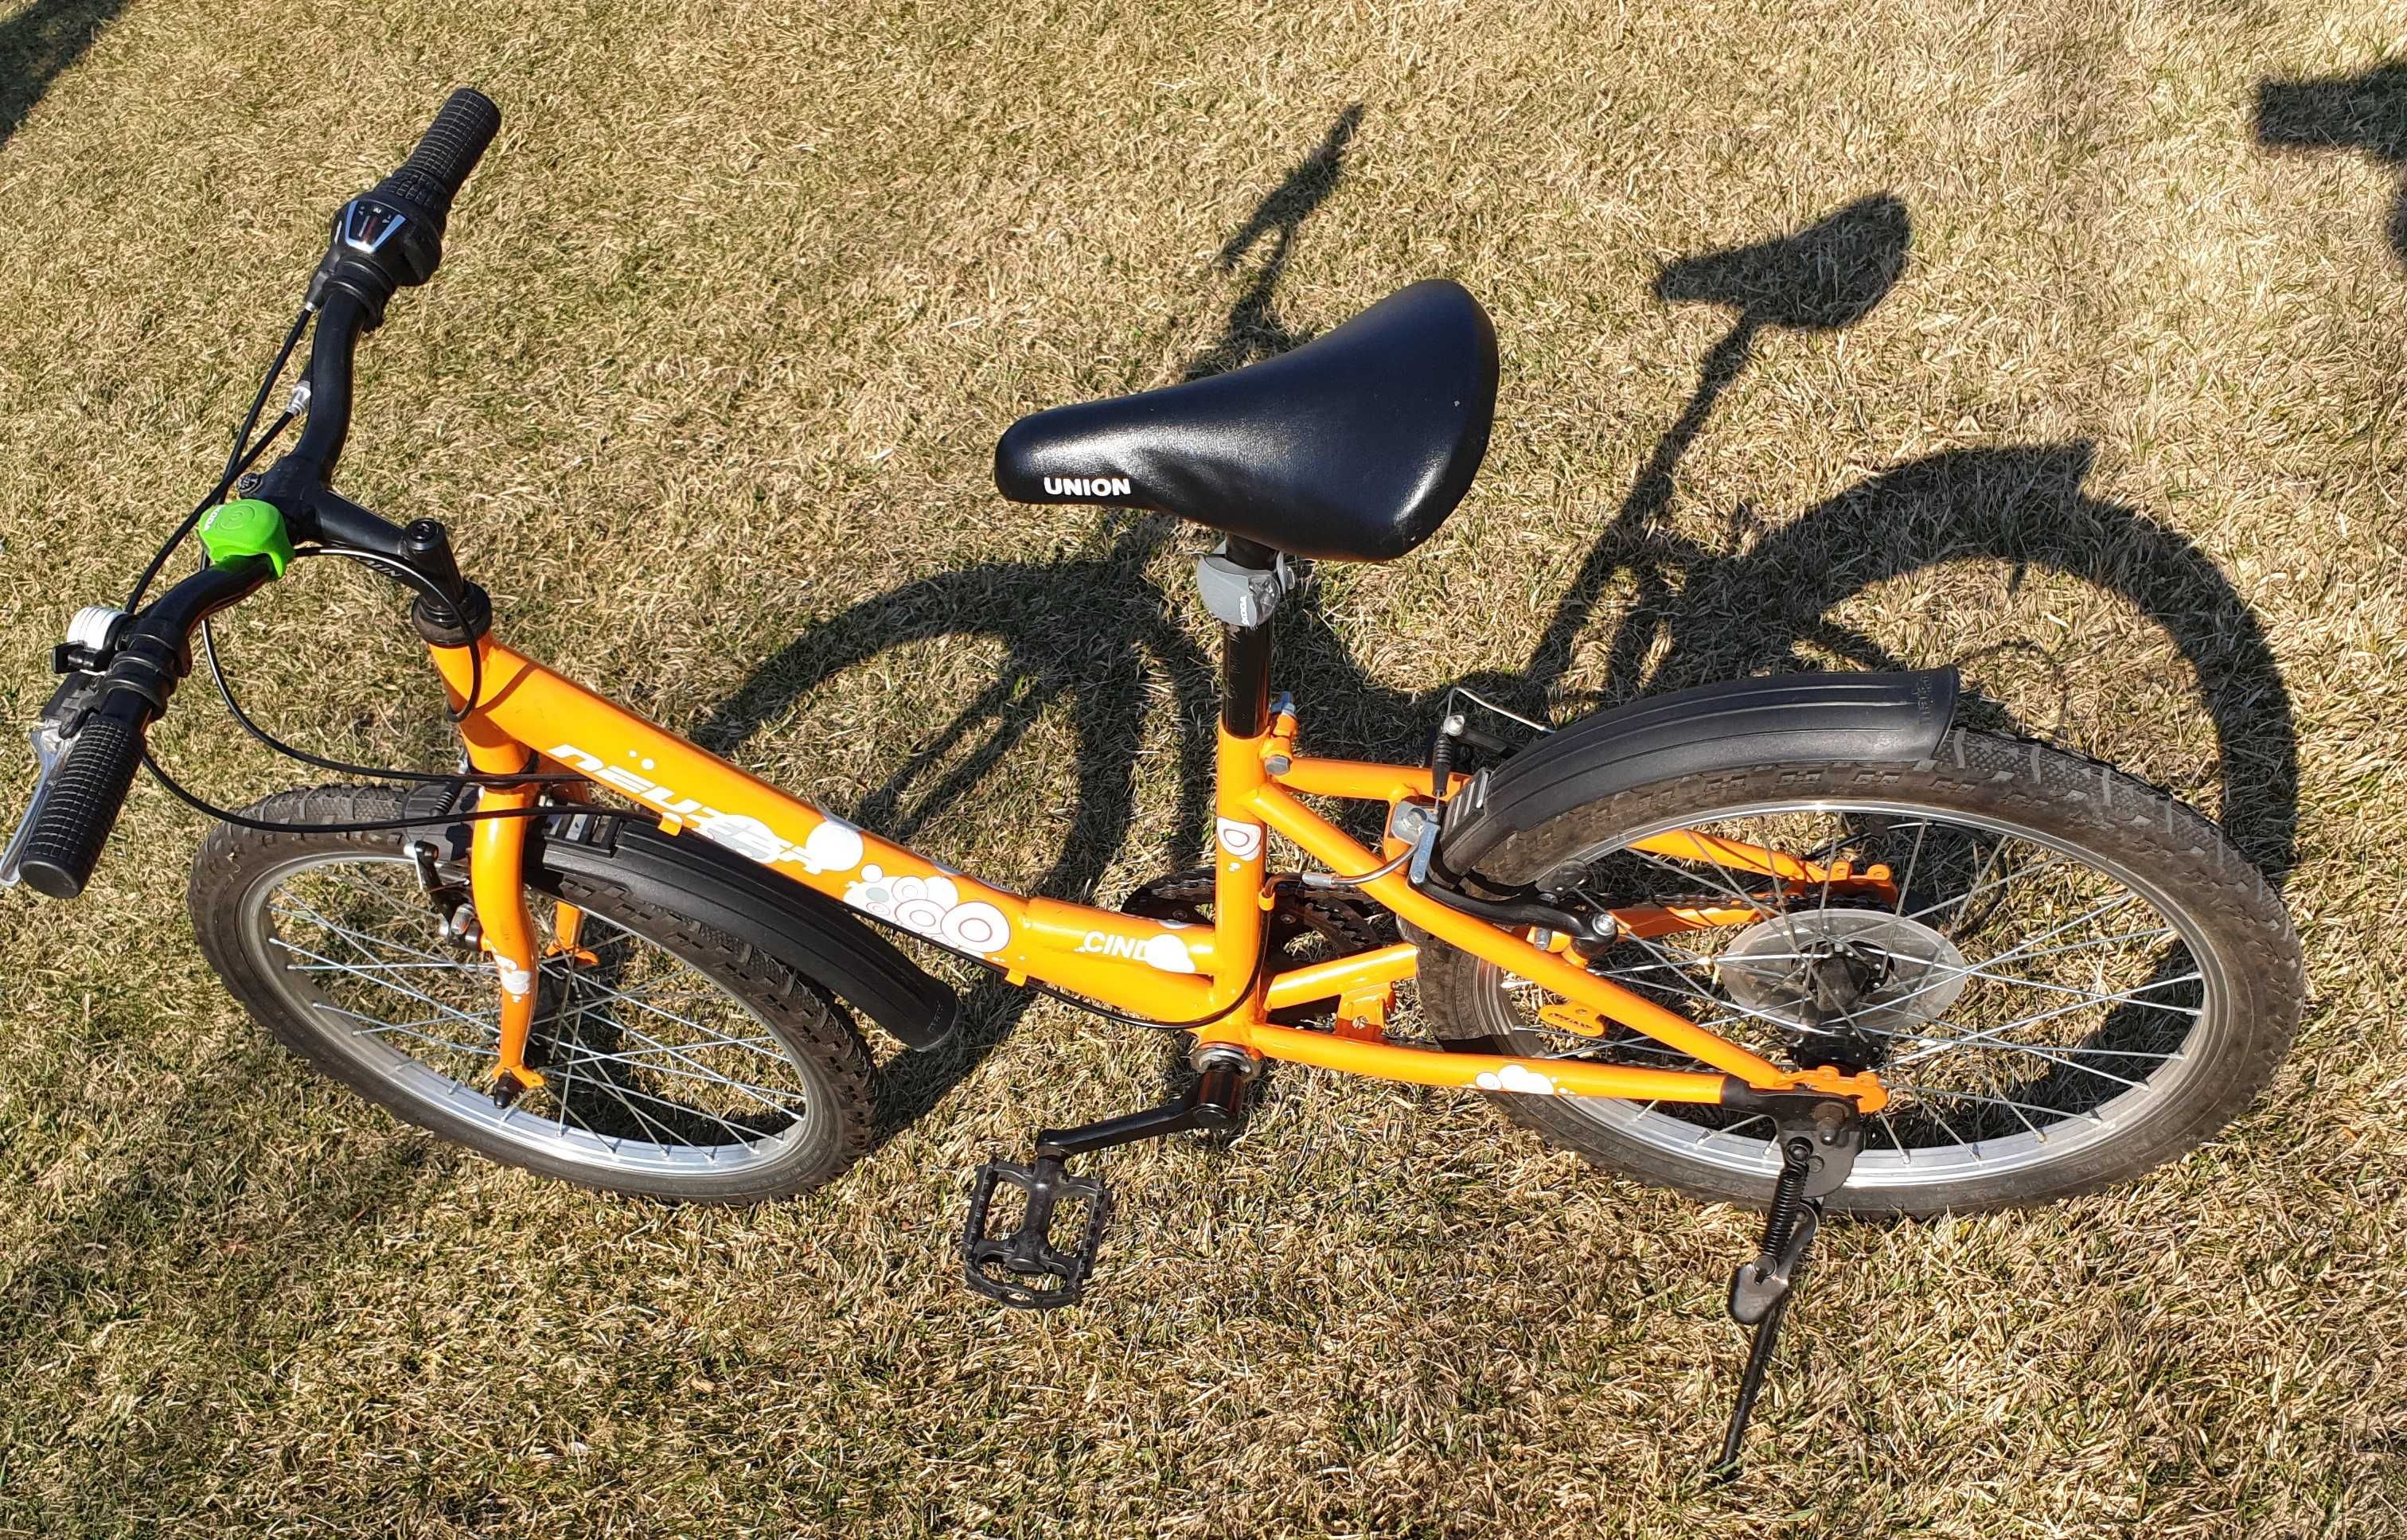 Bicicleta pentru copii